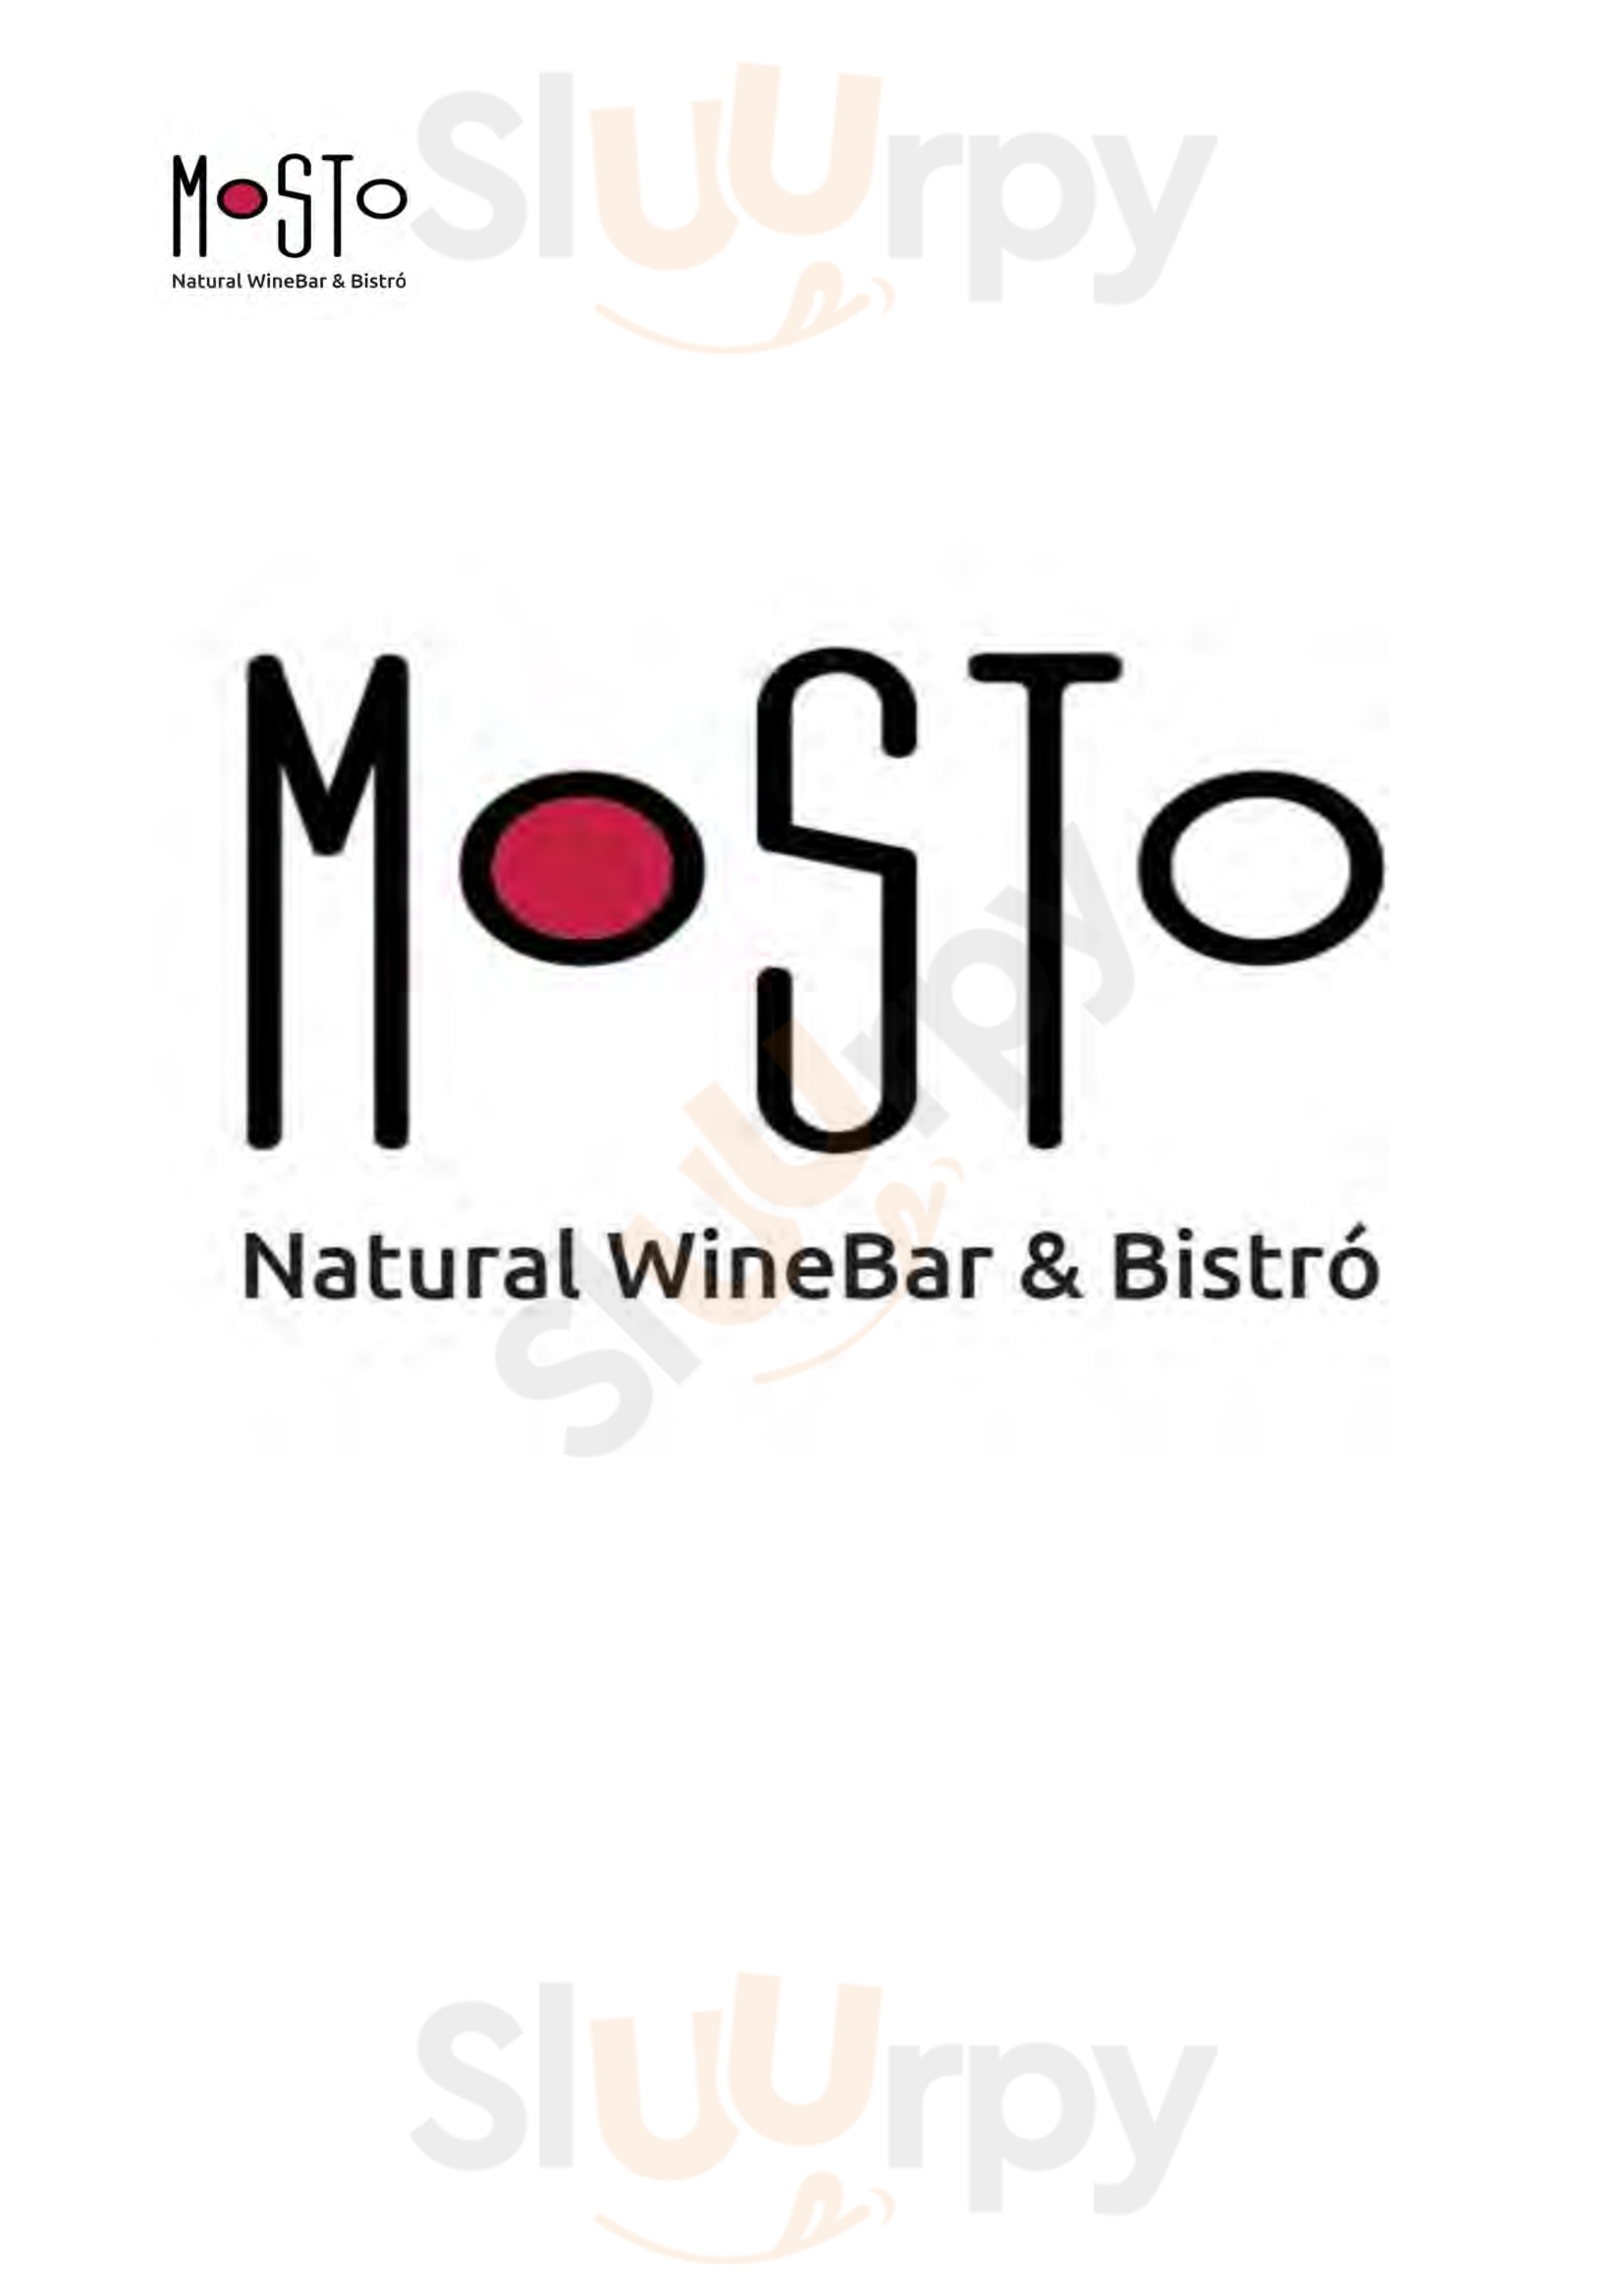 Mosto Natural Wine Bar & Bistro Bucharest Menu - 1